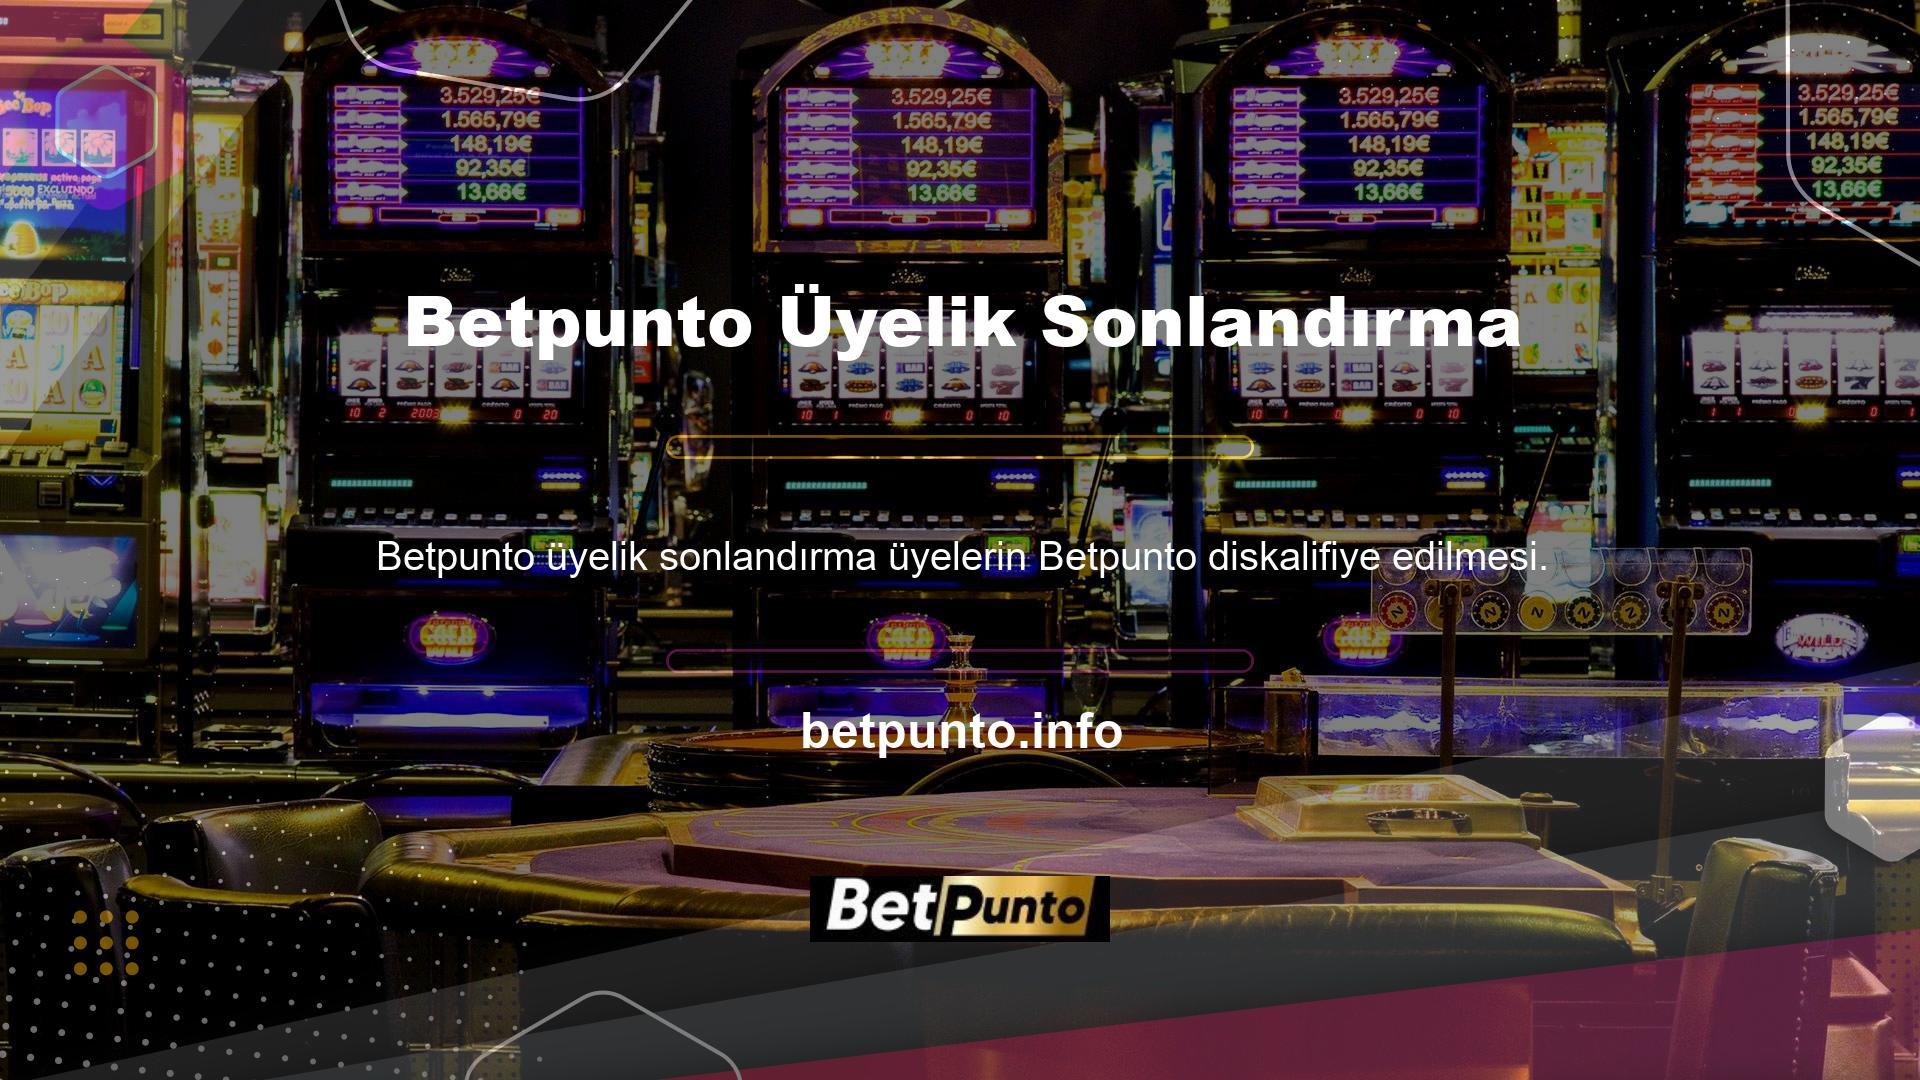 Betpunto, kullanıcıların üyeliklerini sonlandırmasına izin verir